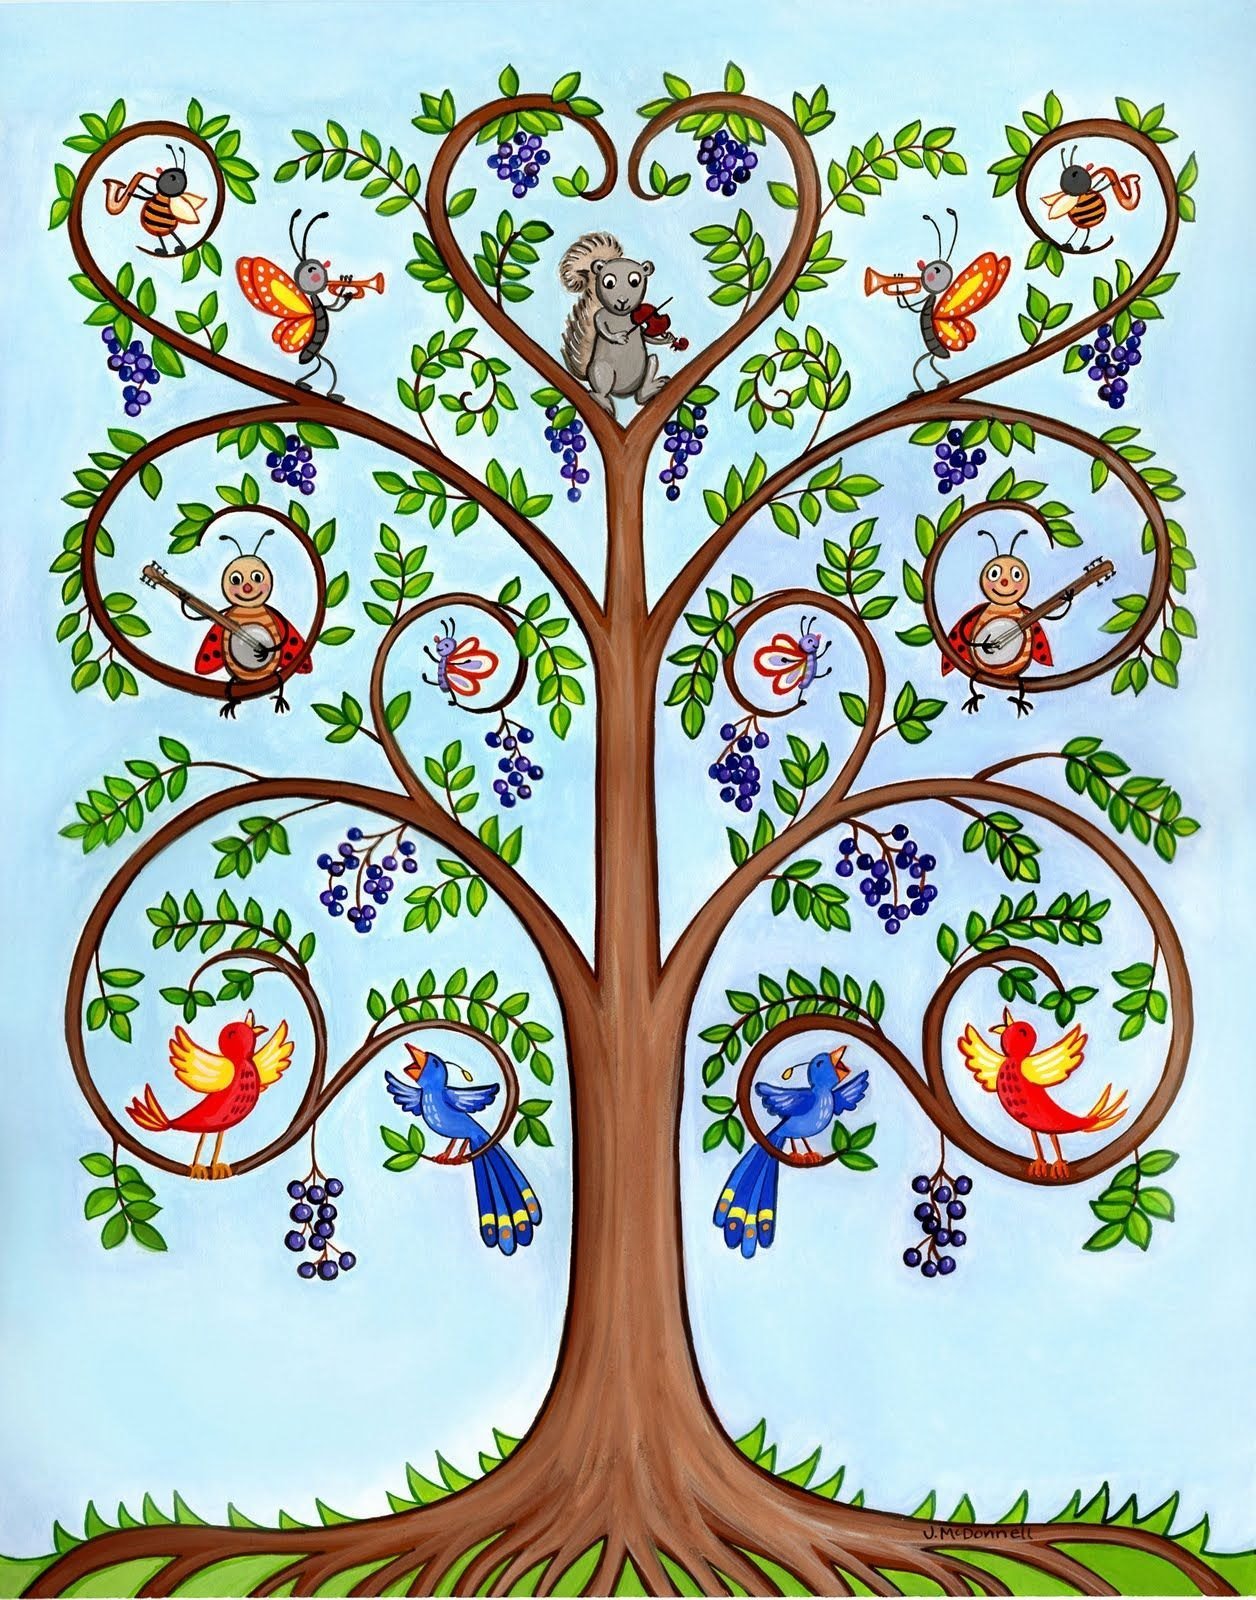 Плоды чудо дерева 5 букв. Древо жизни родословная. Чудо дерево Древо жизни. "Tree of Life" ("дерево жизни") by degree. Образ дерева.